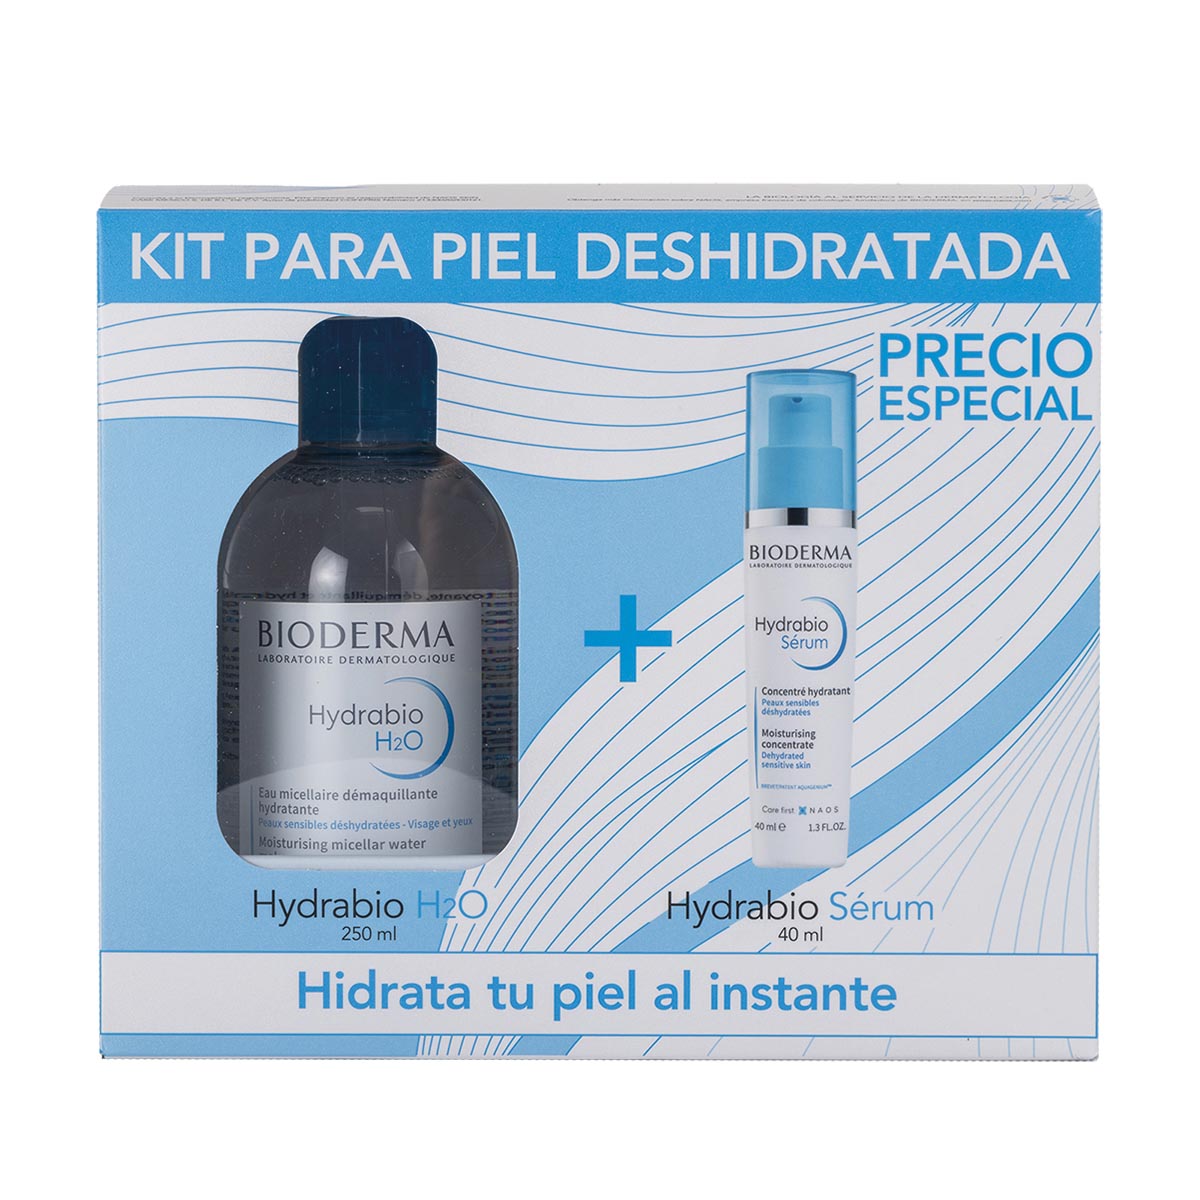 Kit-Hydrabio h2o agua micelar 250ml + Hydrabio serum 40ml.